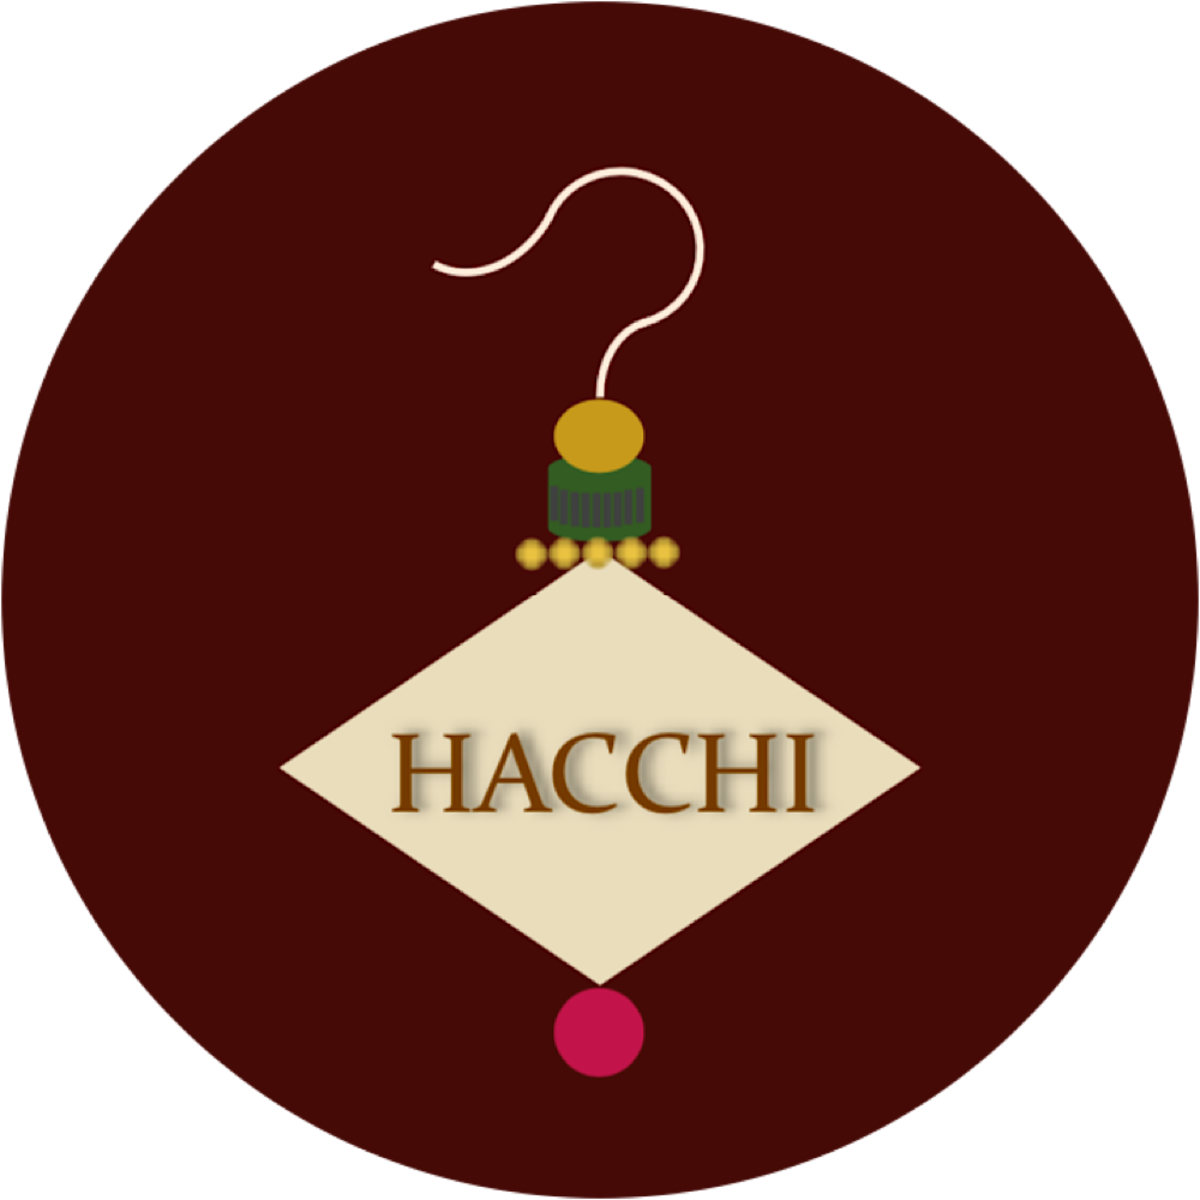 HACCHI